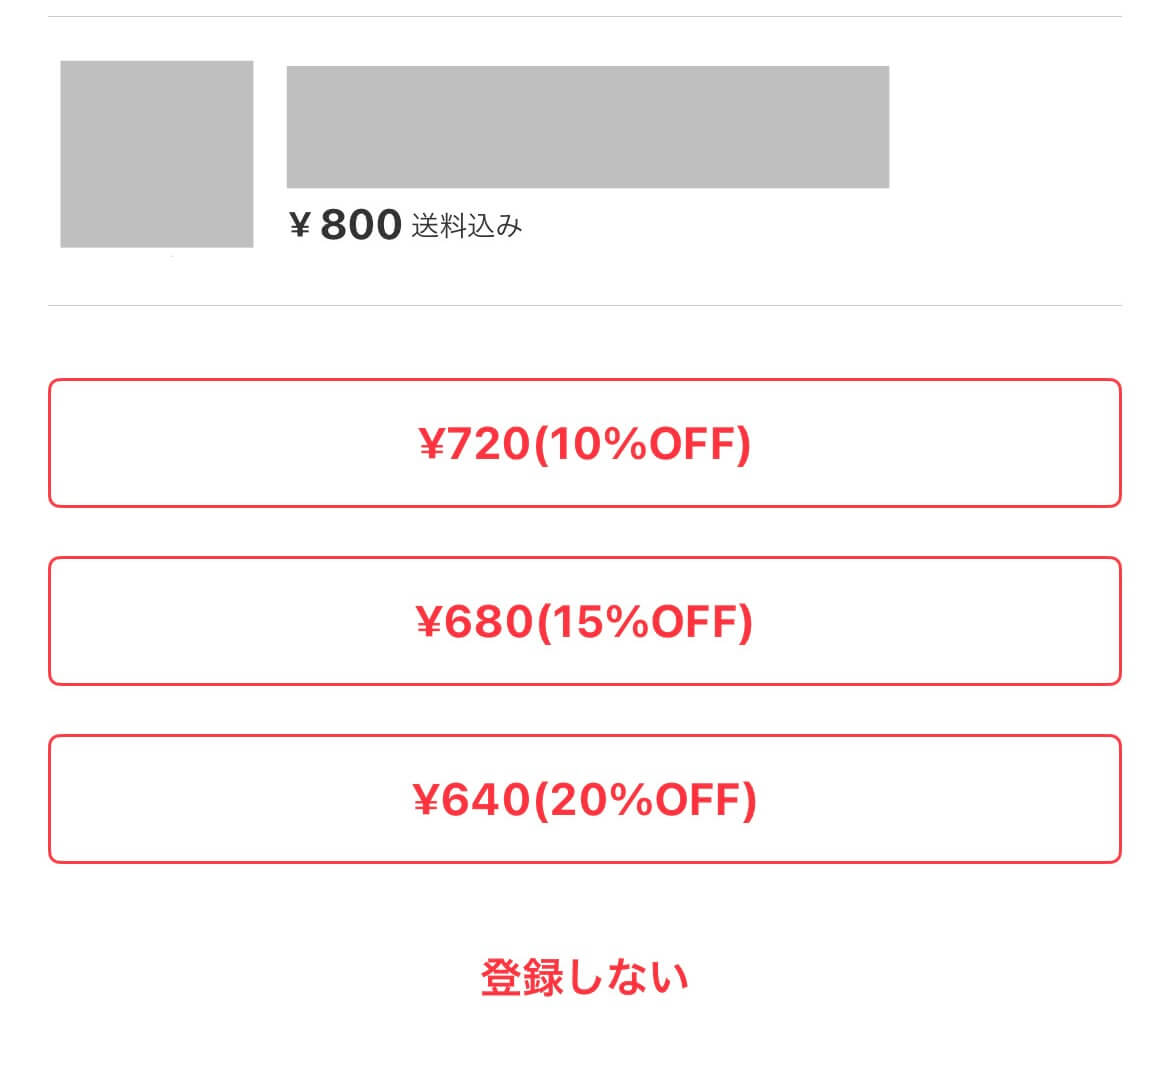 ¥800送料込み
¥720(10%OFF)
¥680(15%OFF)
¥640(20%OFF)
登録しない